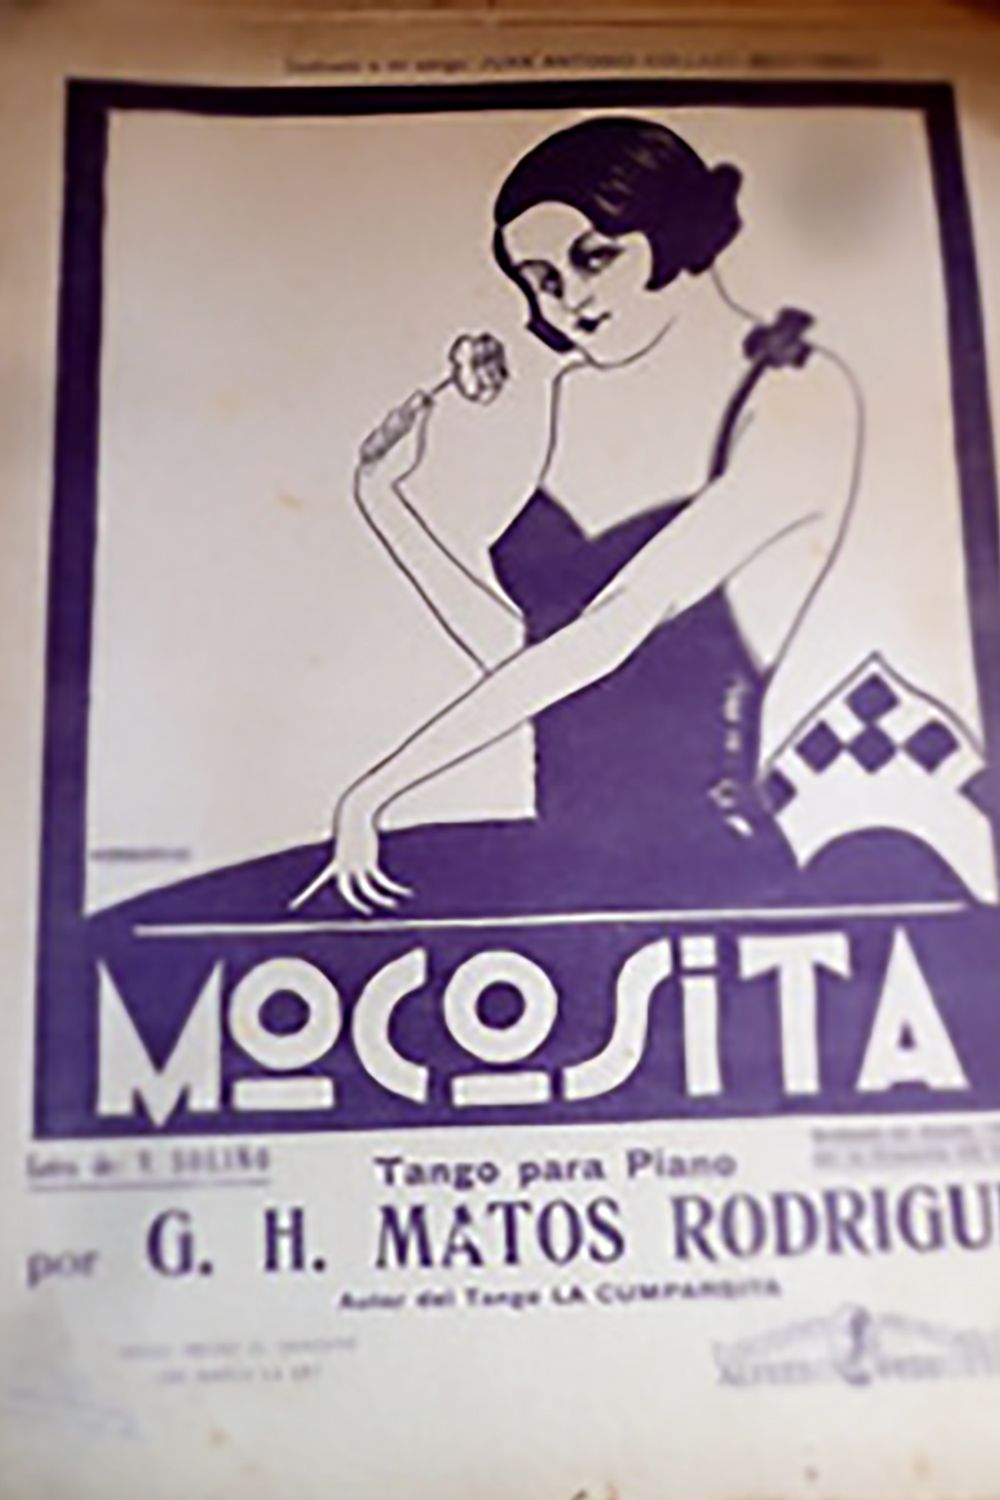 "Mocosita", partitura musical del Tango.